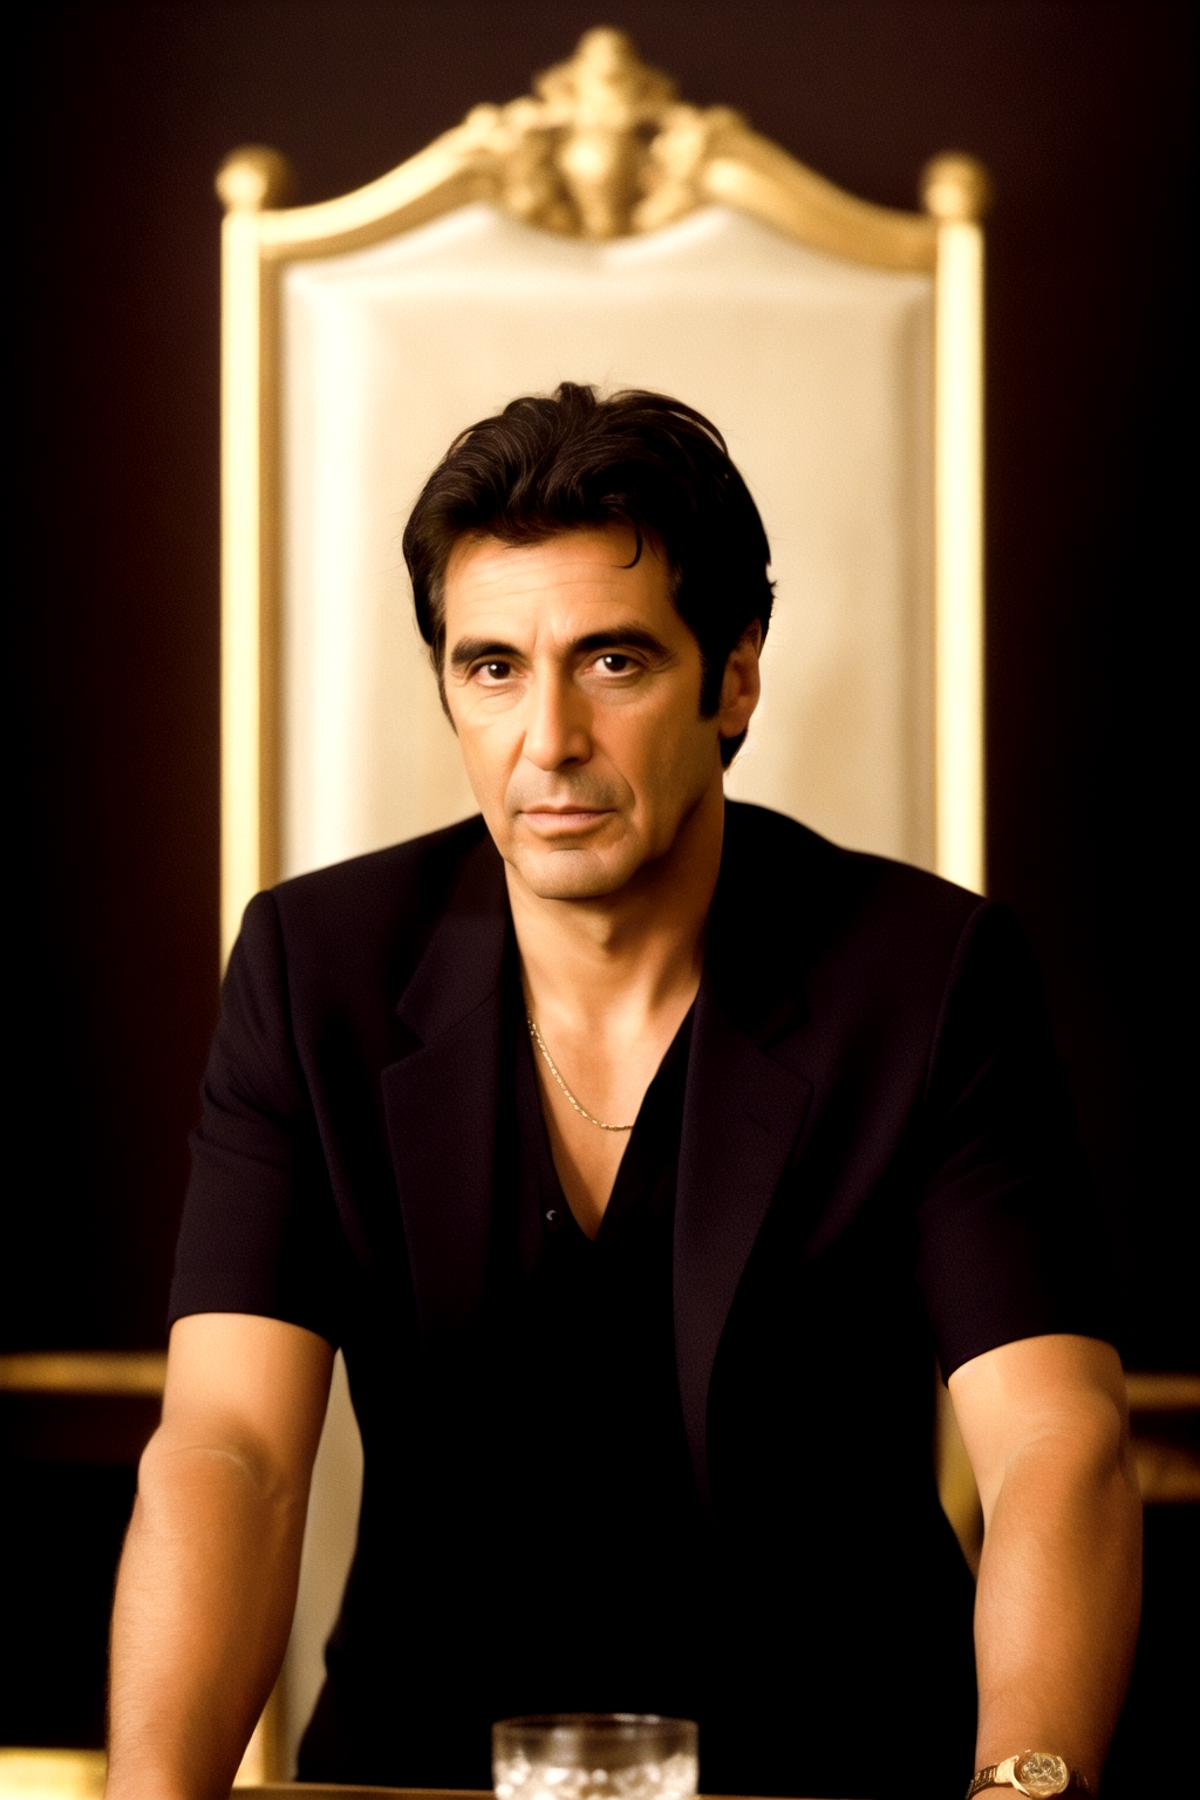 Al Pacino image by Jemov